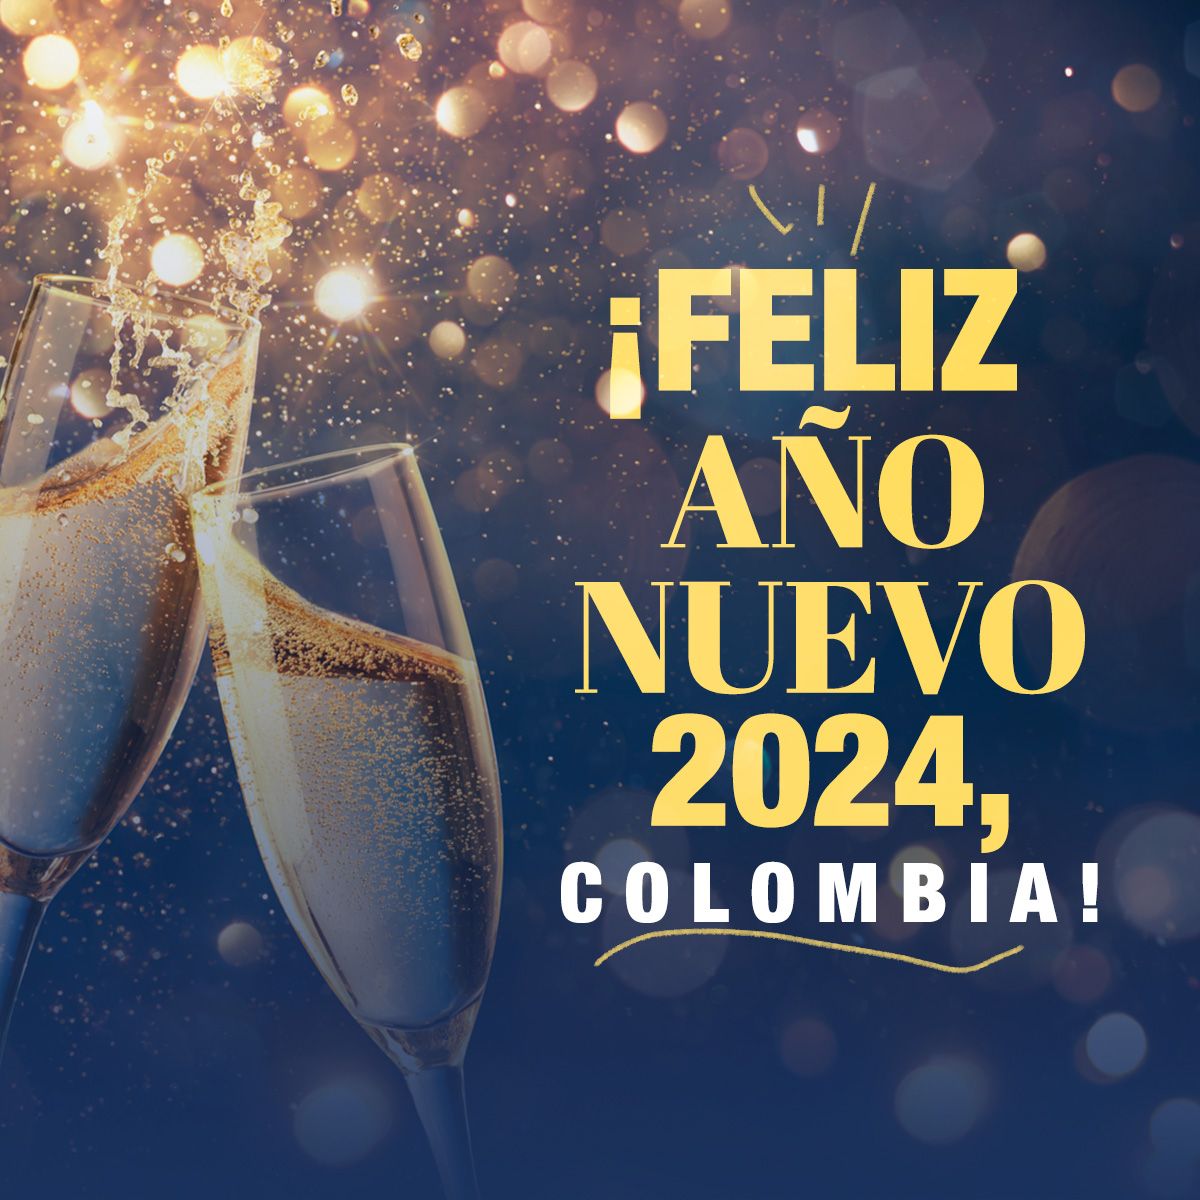 ¡Feliz Año Nuevo 2024, Colombia!